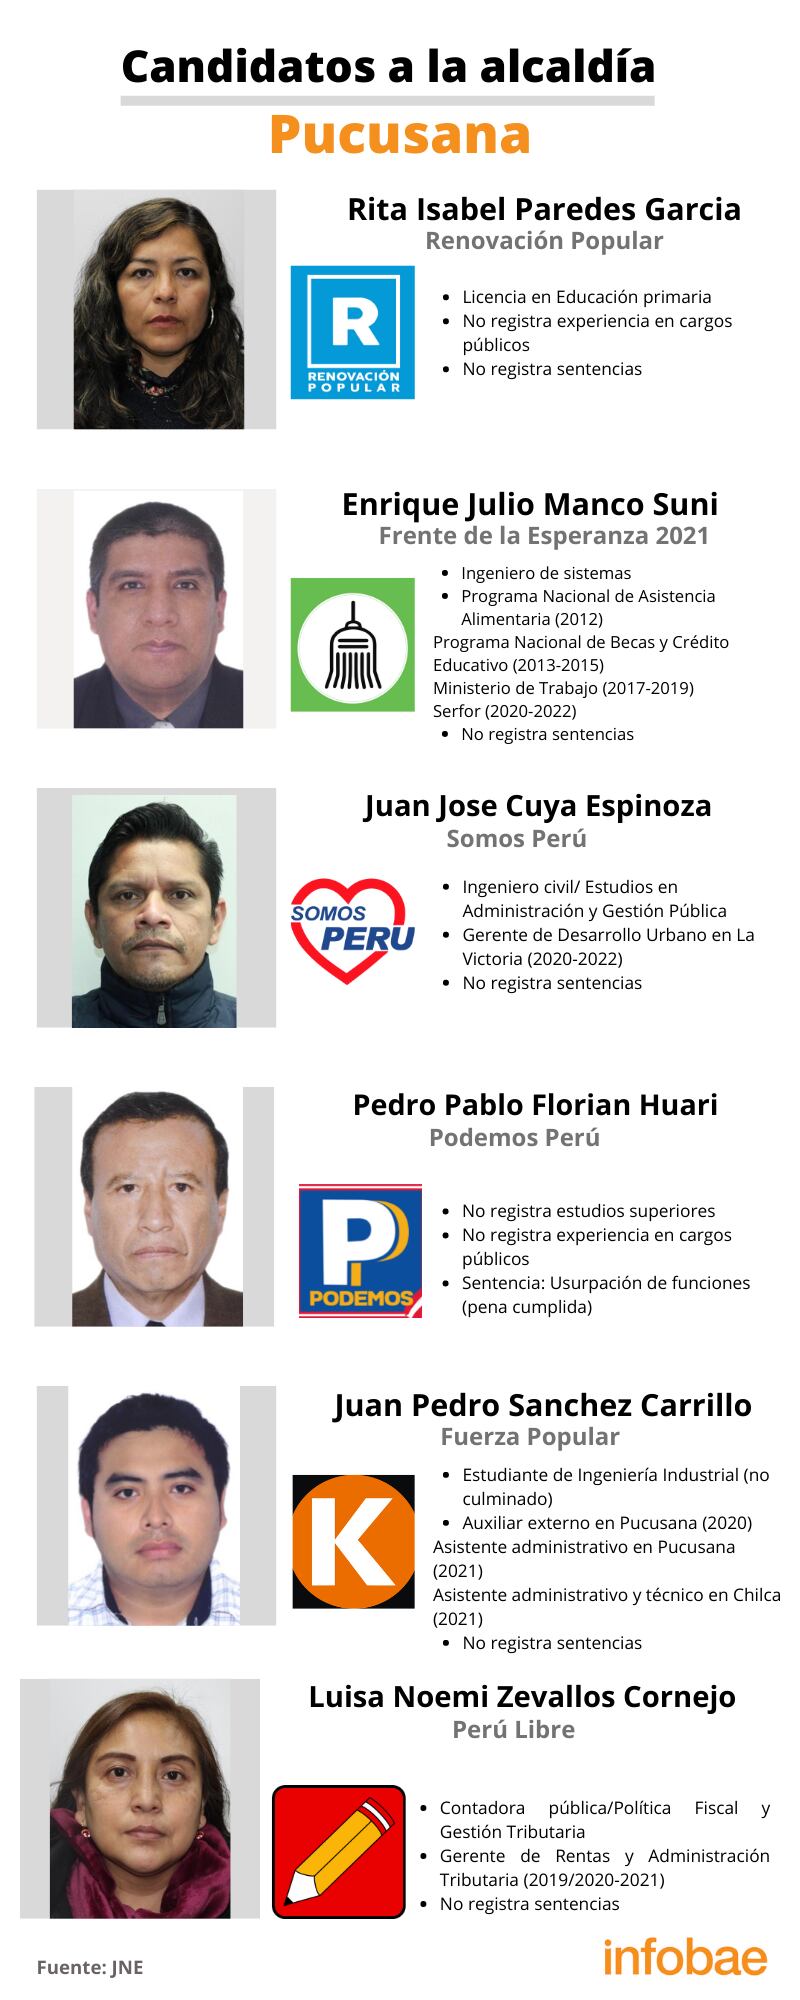 Candidatos a la alcaldía del distrito de Pucusana